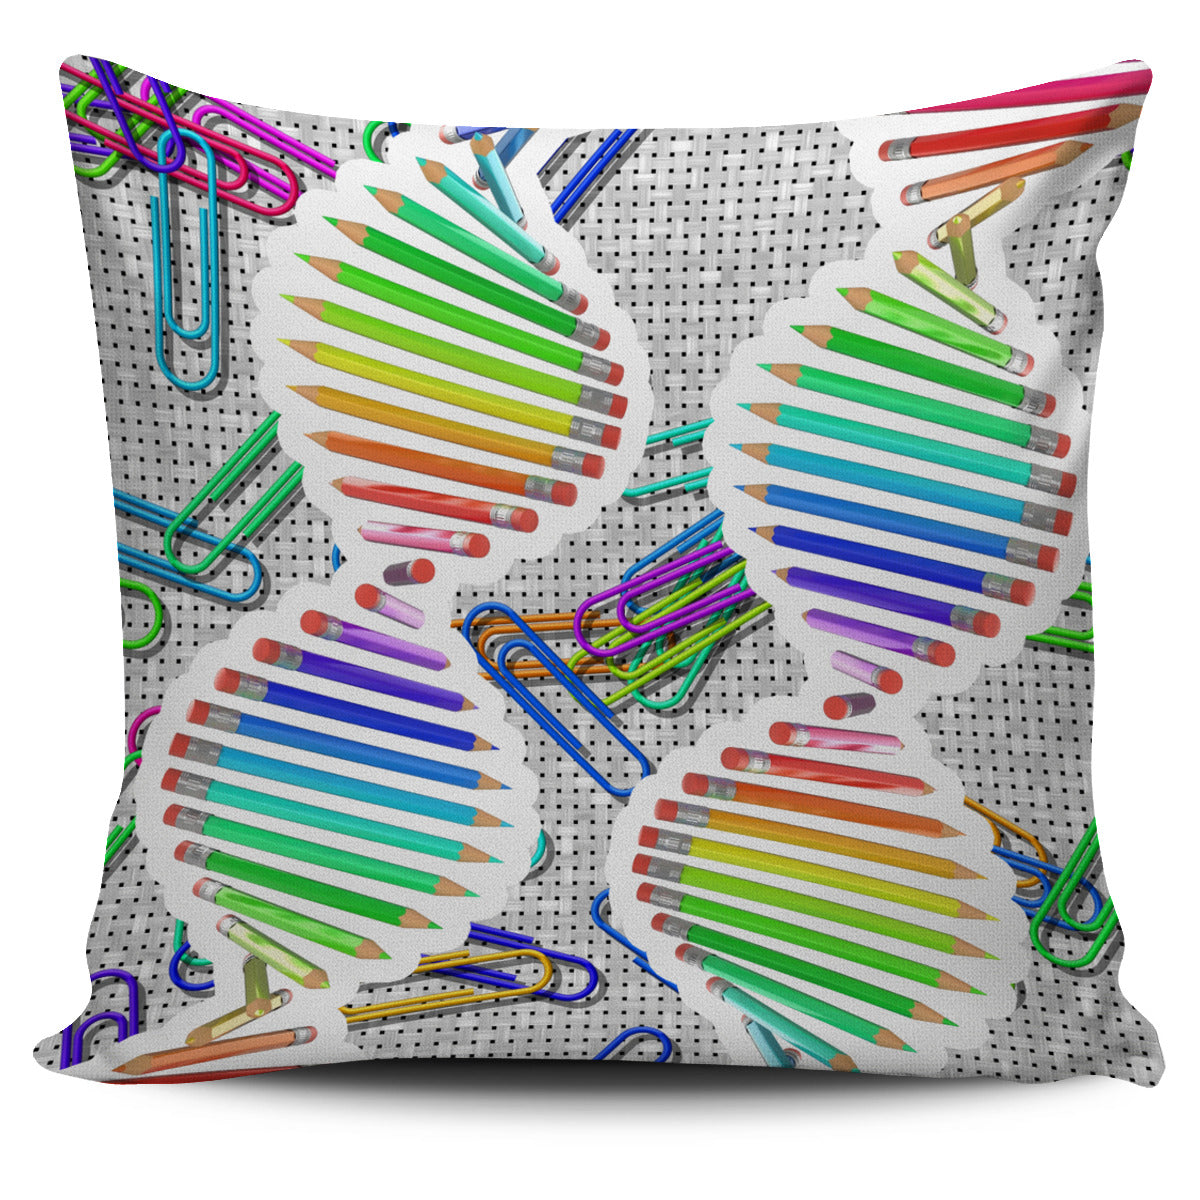 Pencil DNA Pillow Cover